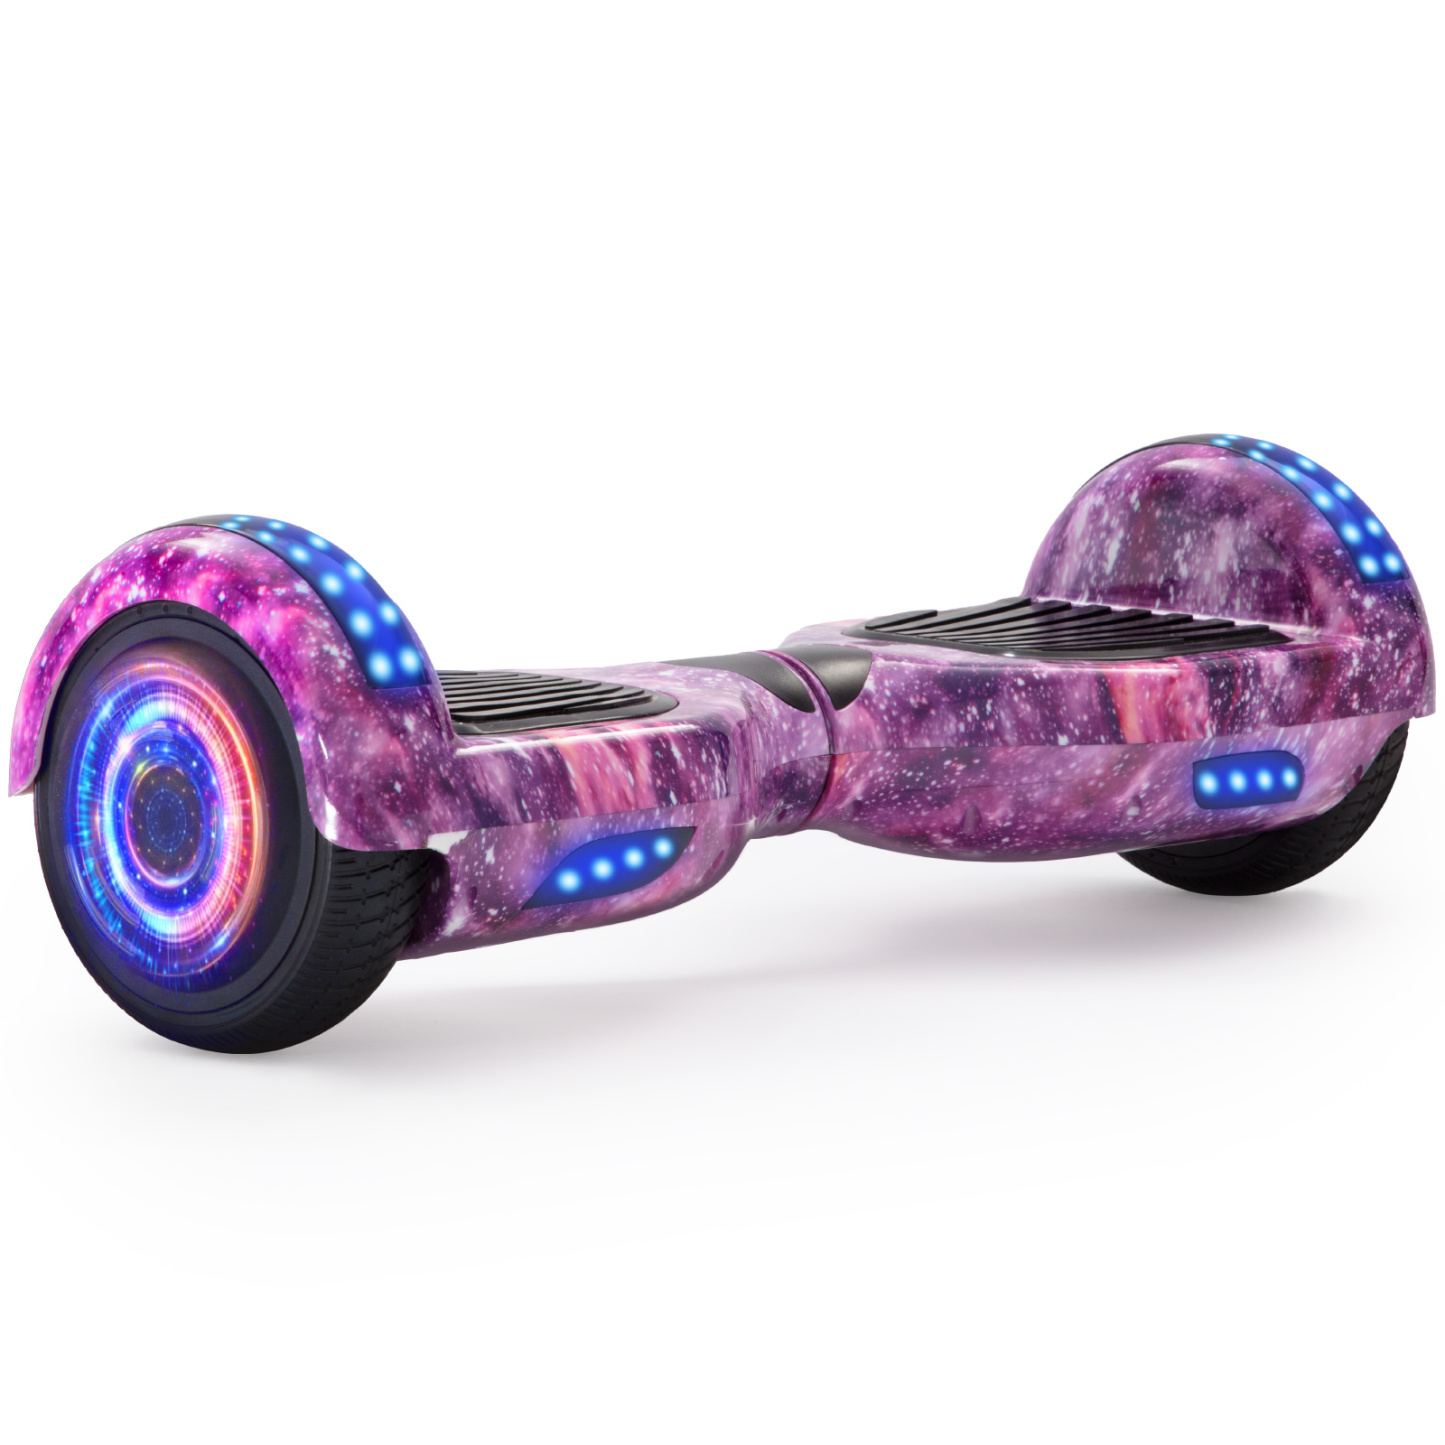 Neues 6,5" Galaxy Hoverboard lila mit Bluetooth Musik Lautsprecher und LED Licht - 500W 12km/h